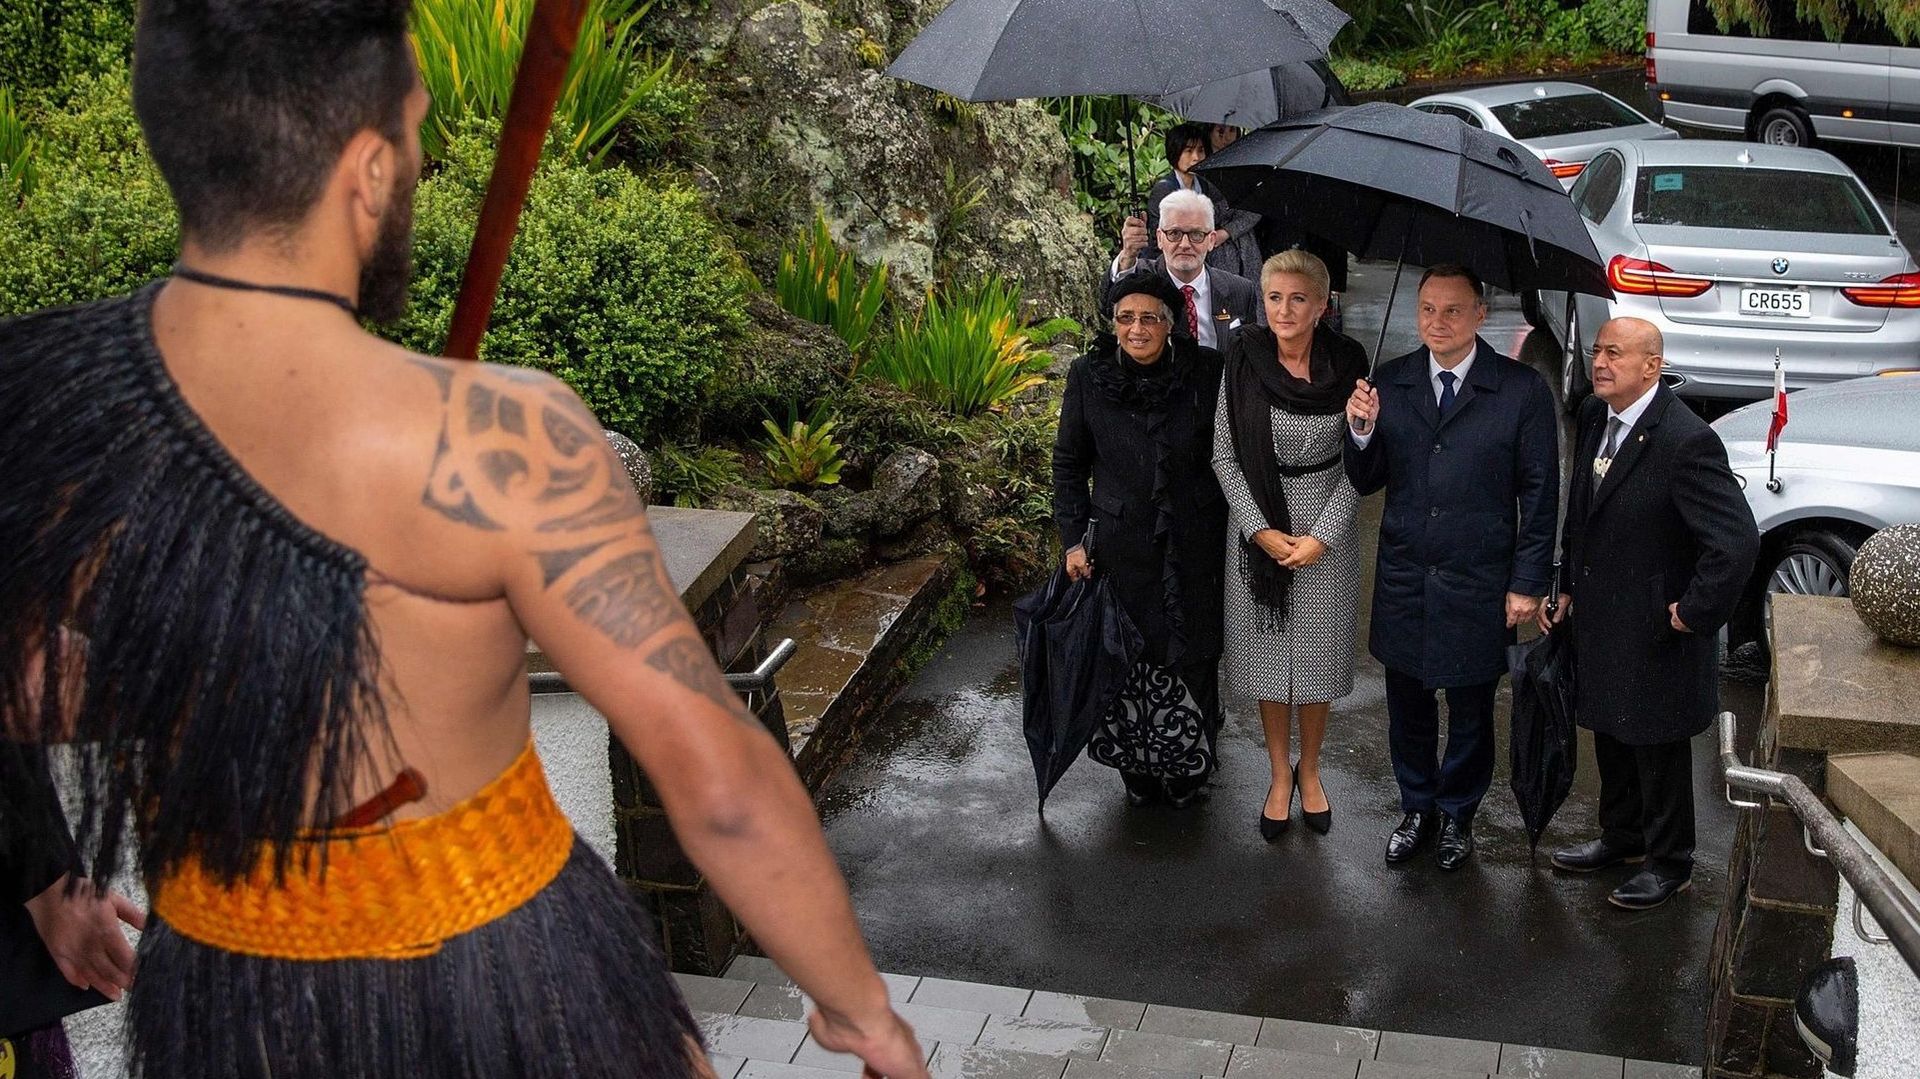 Galeria tygodnia: "Maorys mógł wejść w duszę pierwszej damy. Prezydent nic nie podejrzewał"